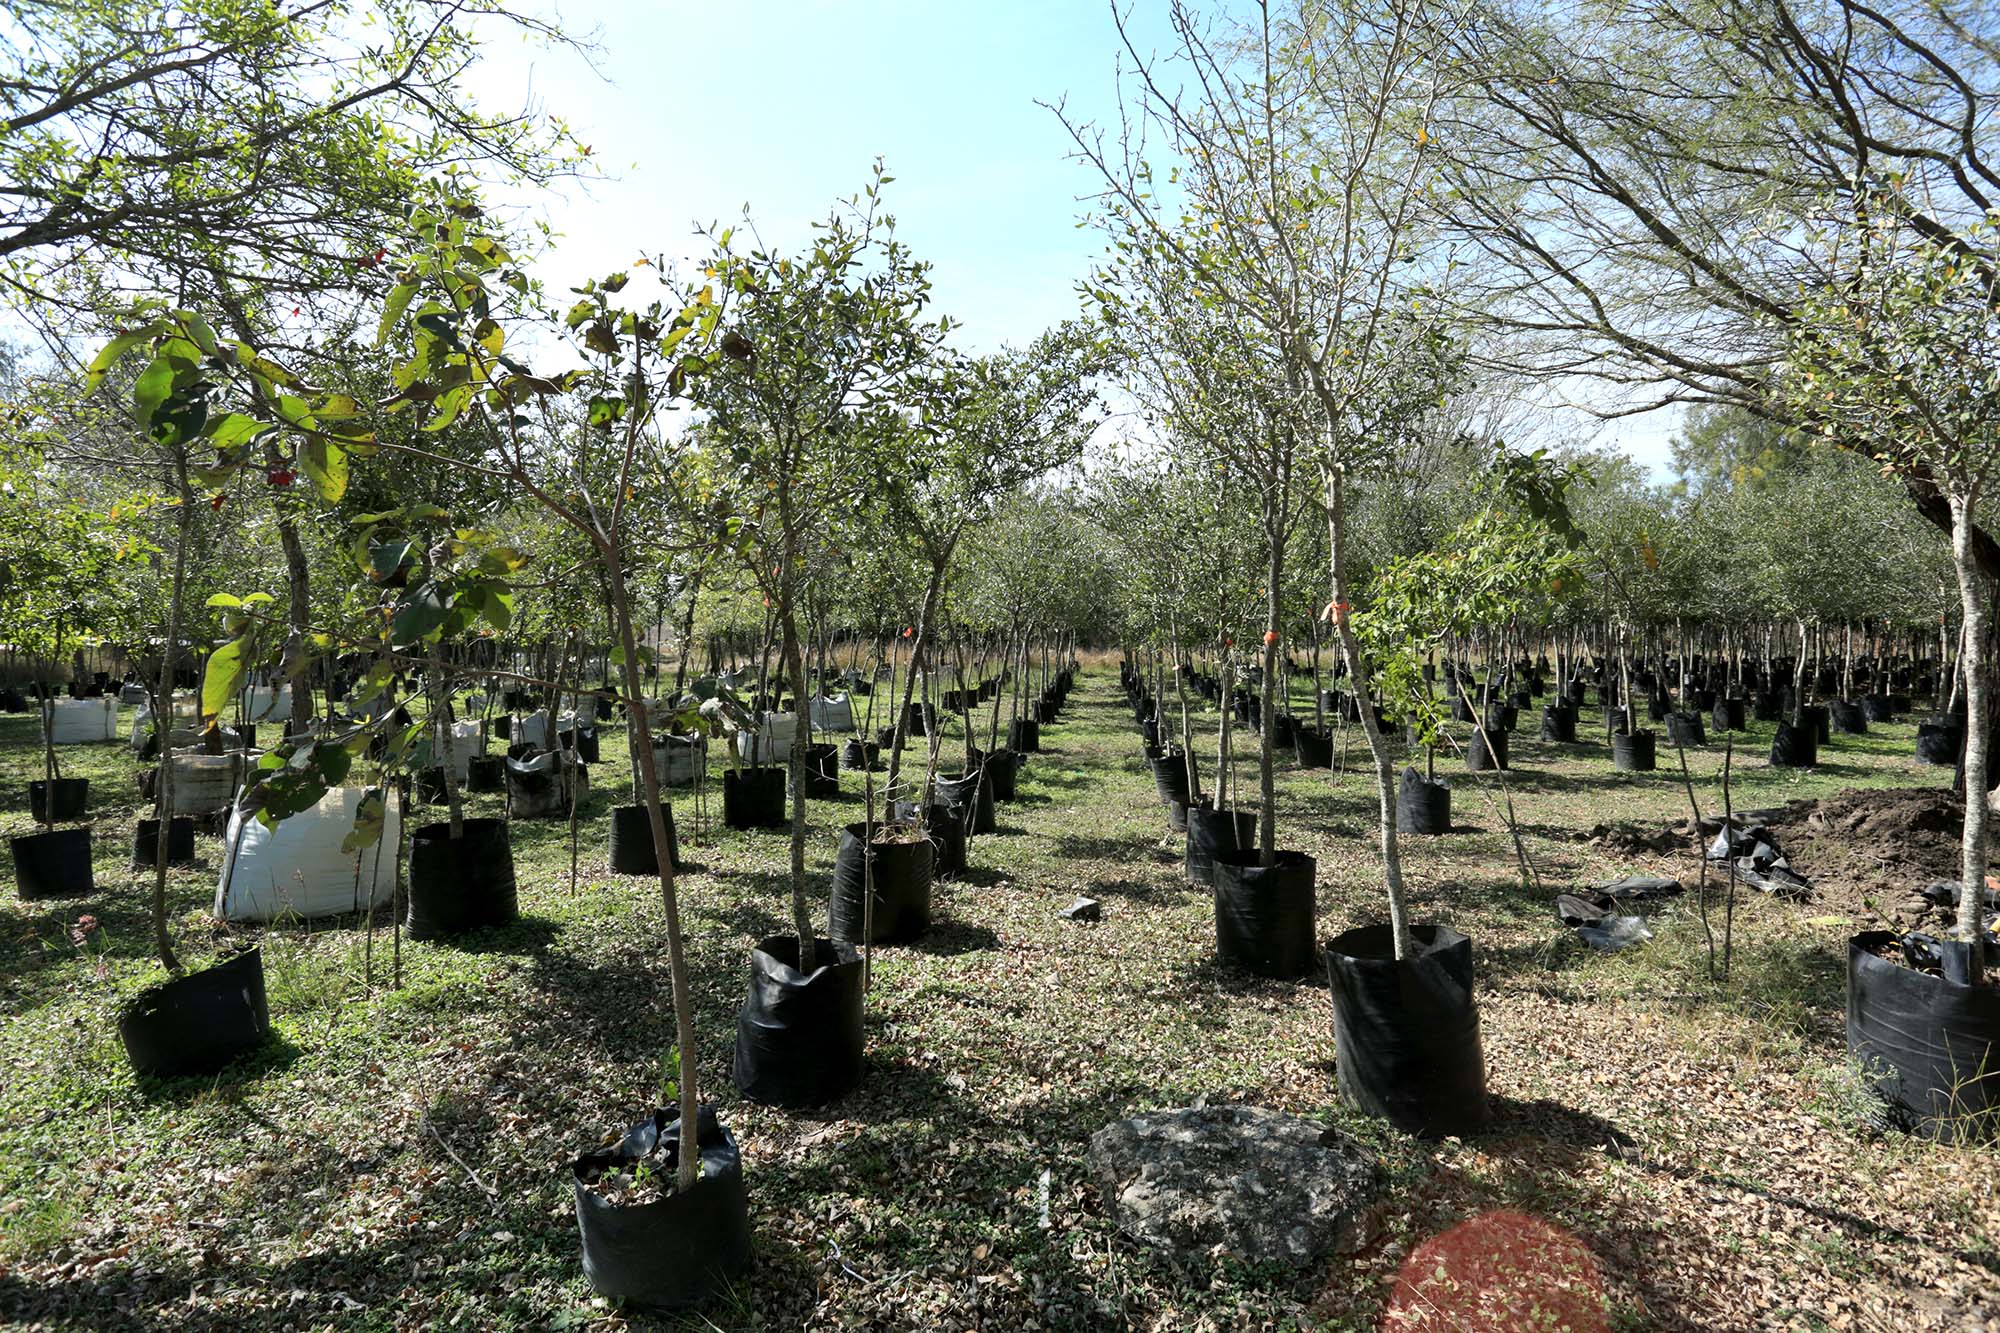 Siembra un árbol, ayuda al ambiente - Universidad Autónoma de Nuevo León